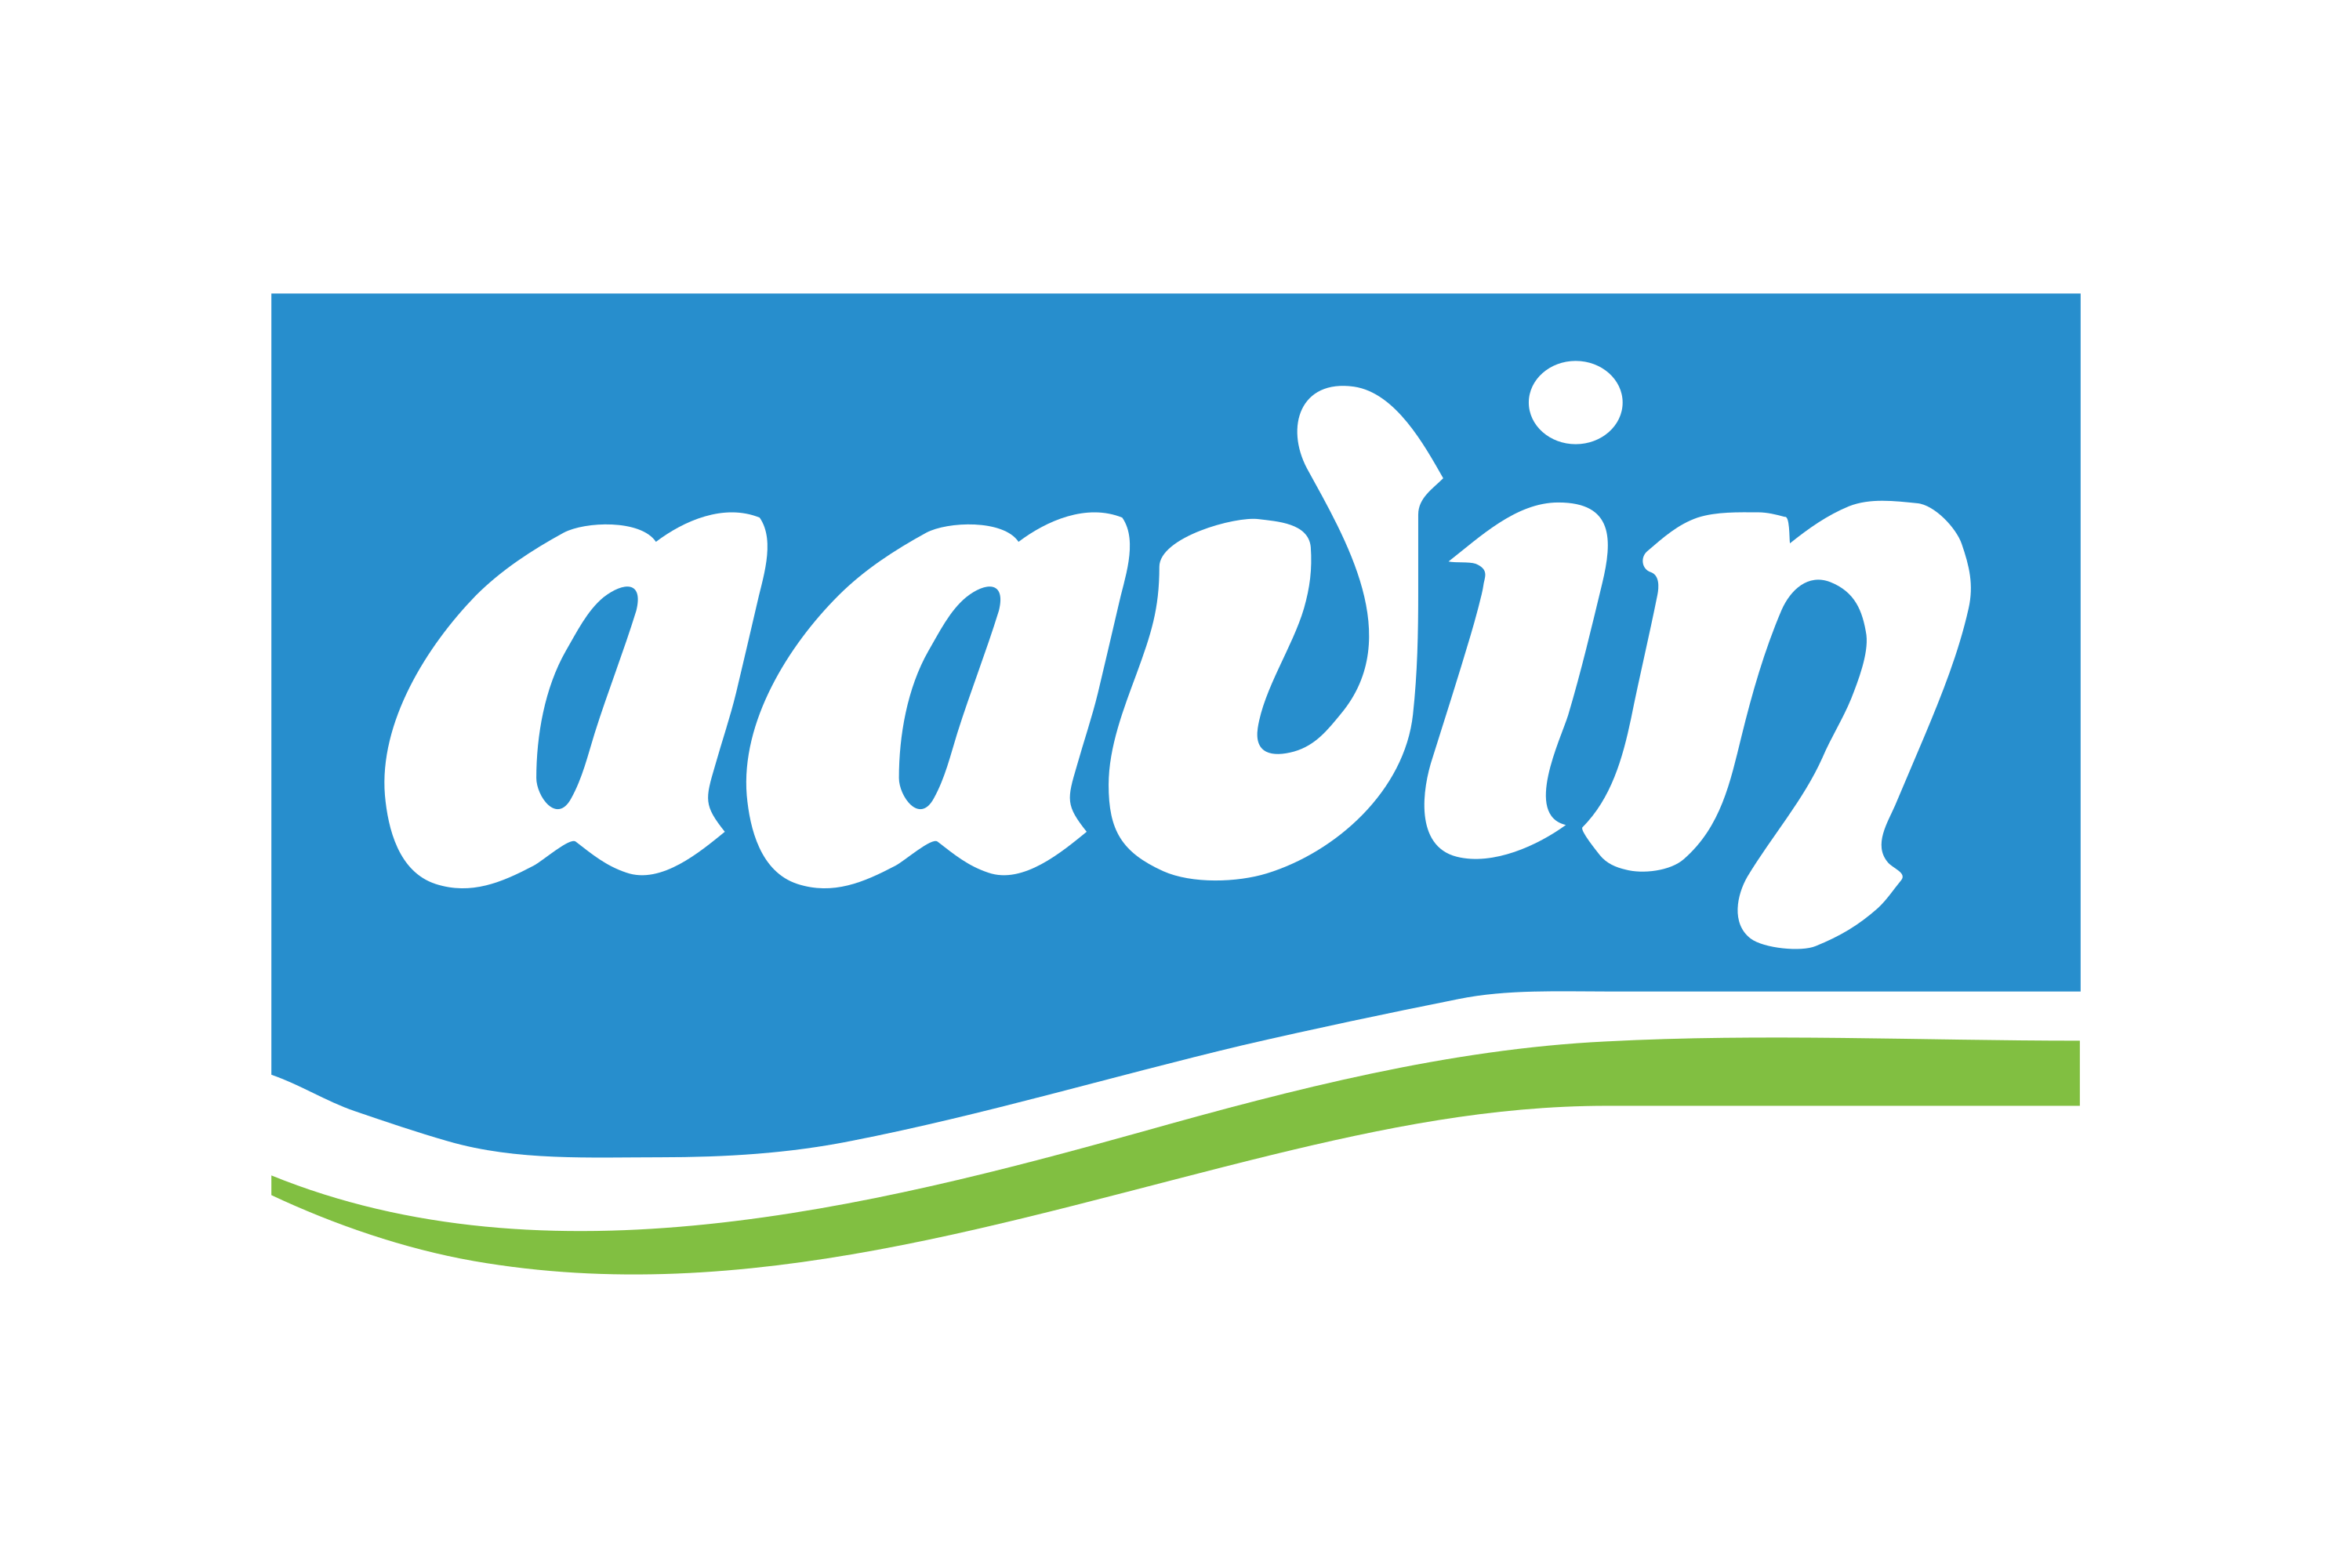 Aavin Logo